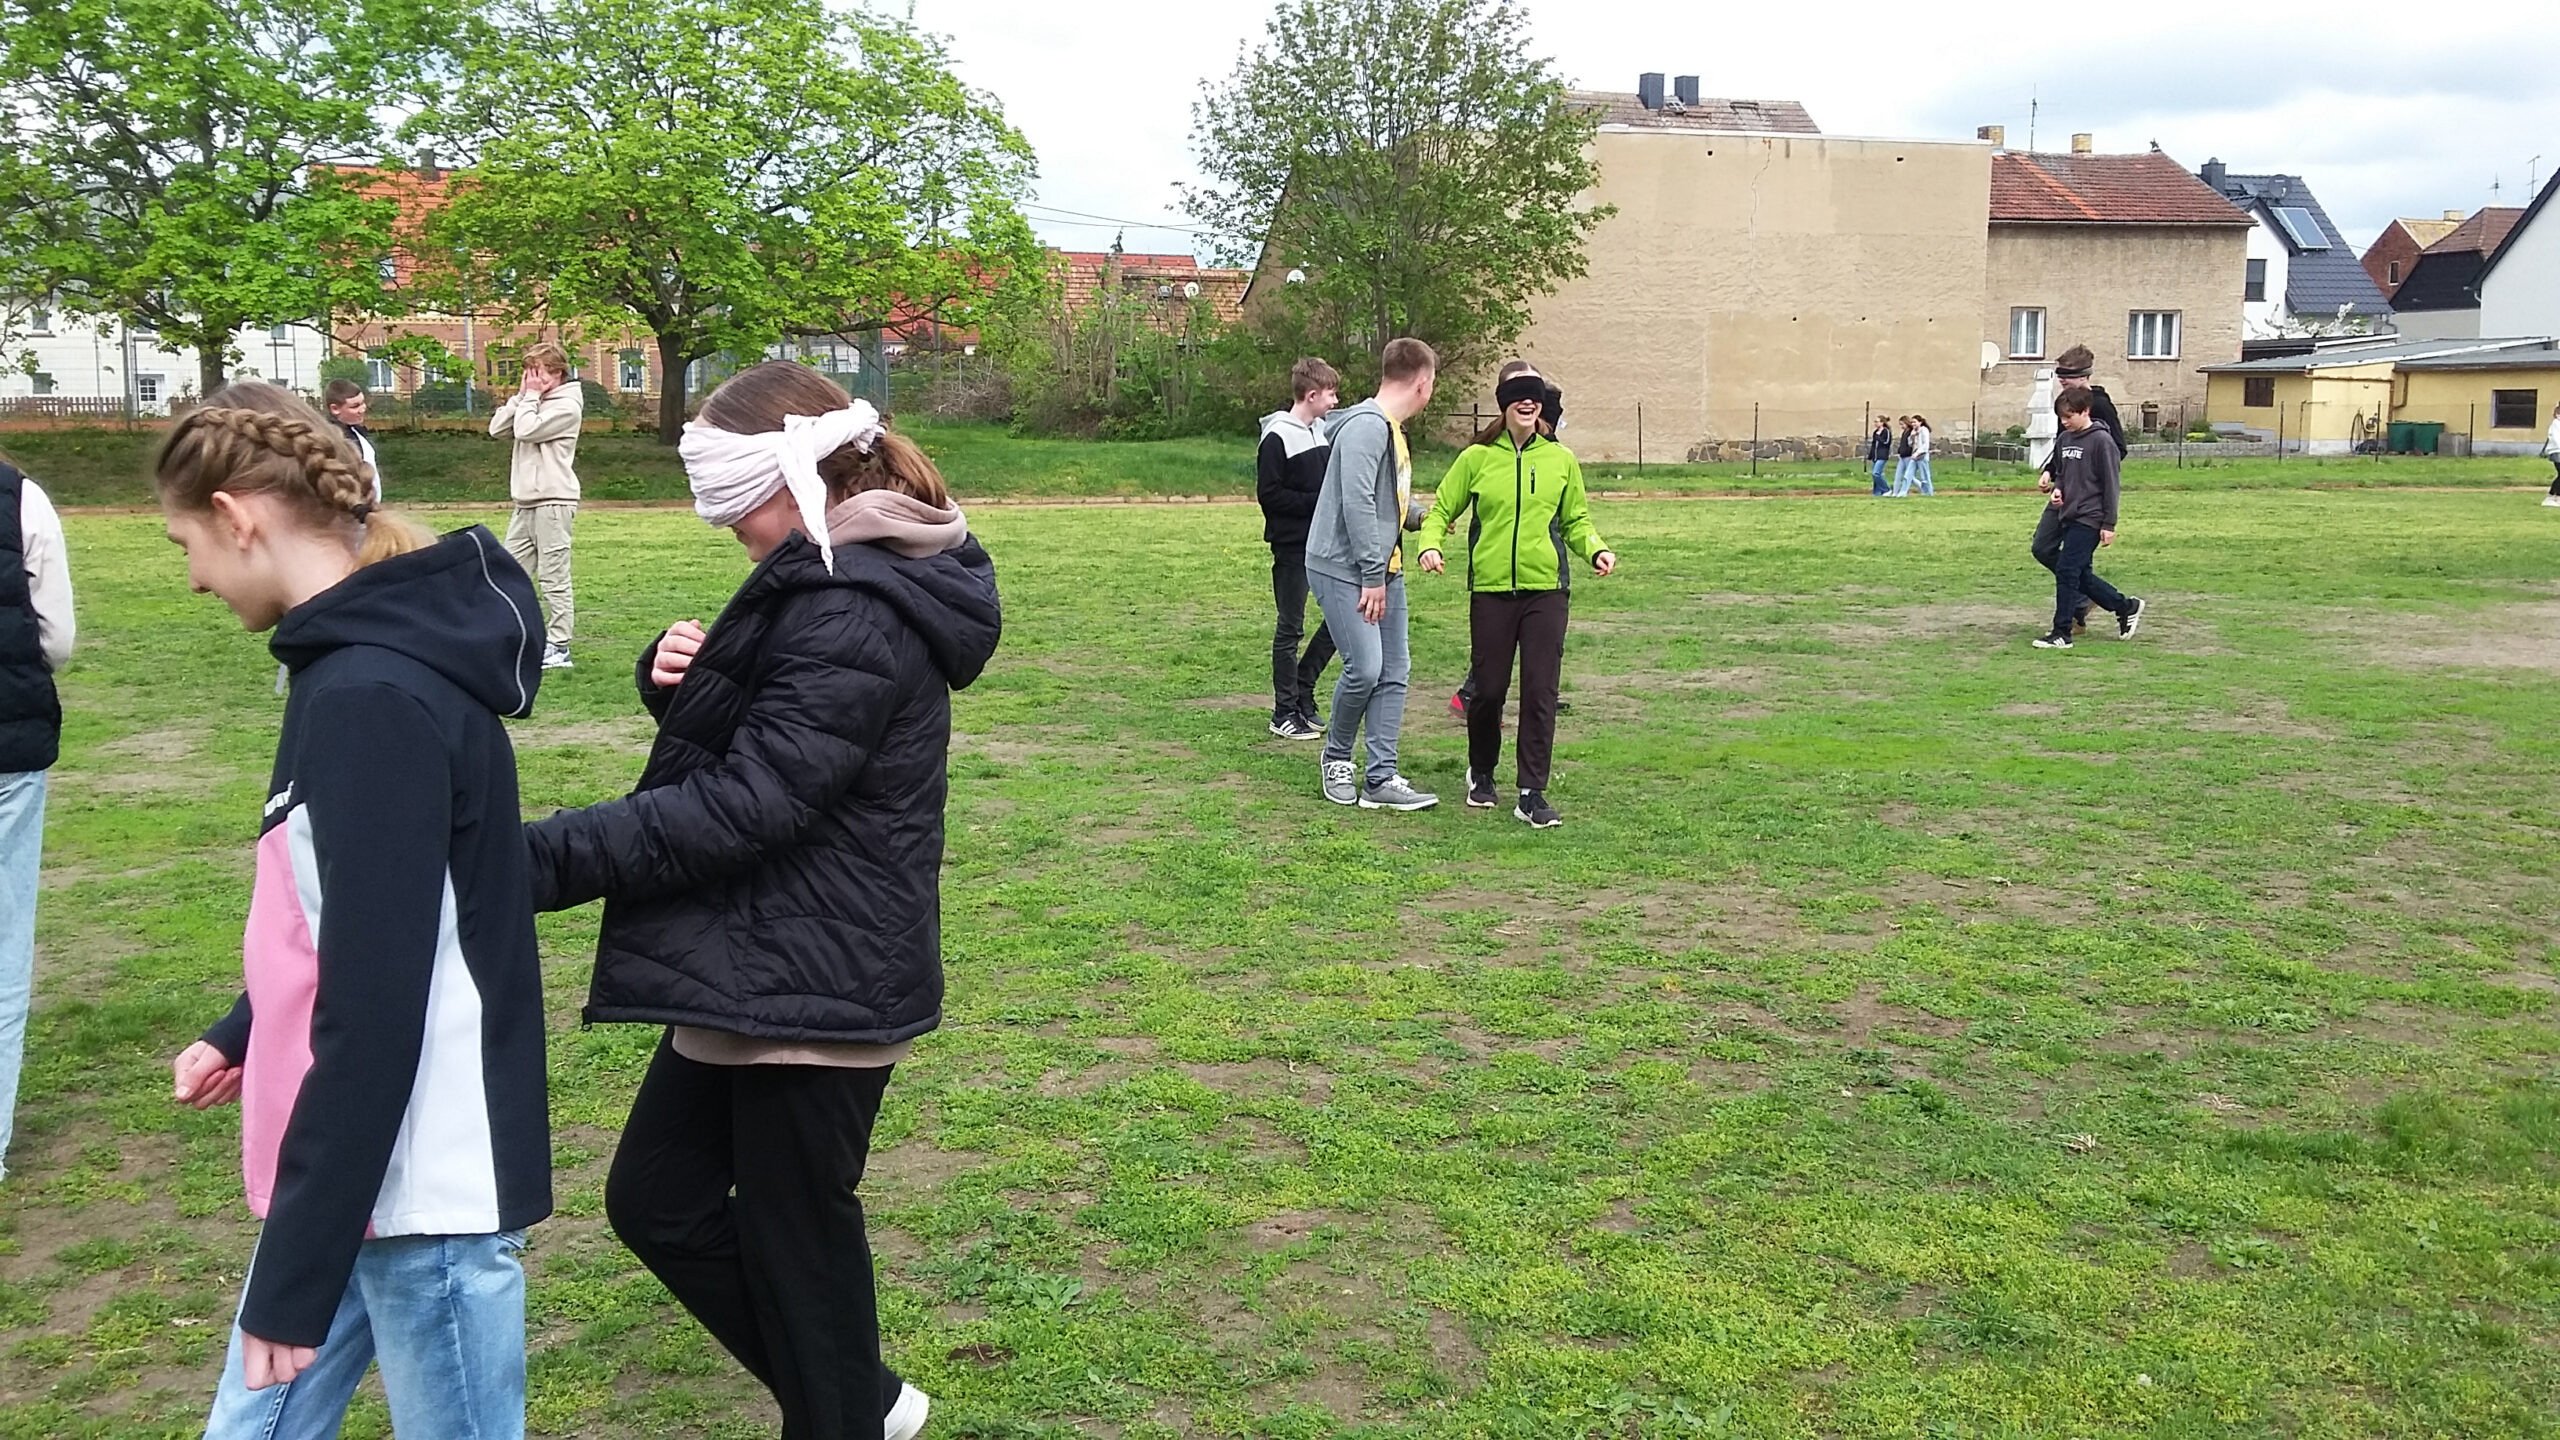 Mobilitätstraining auf dem Sportplatz: Die Jugendlichen führen sich gegenseitig.